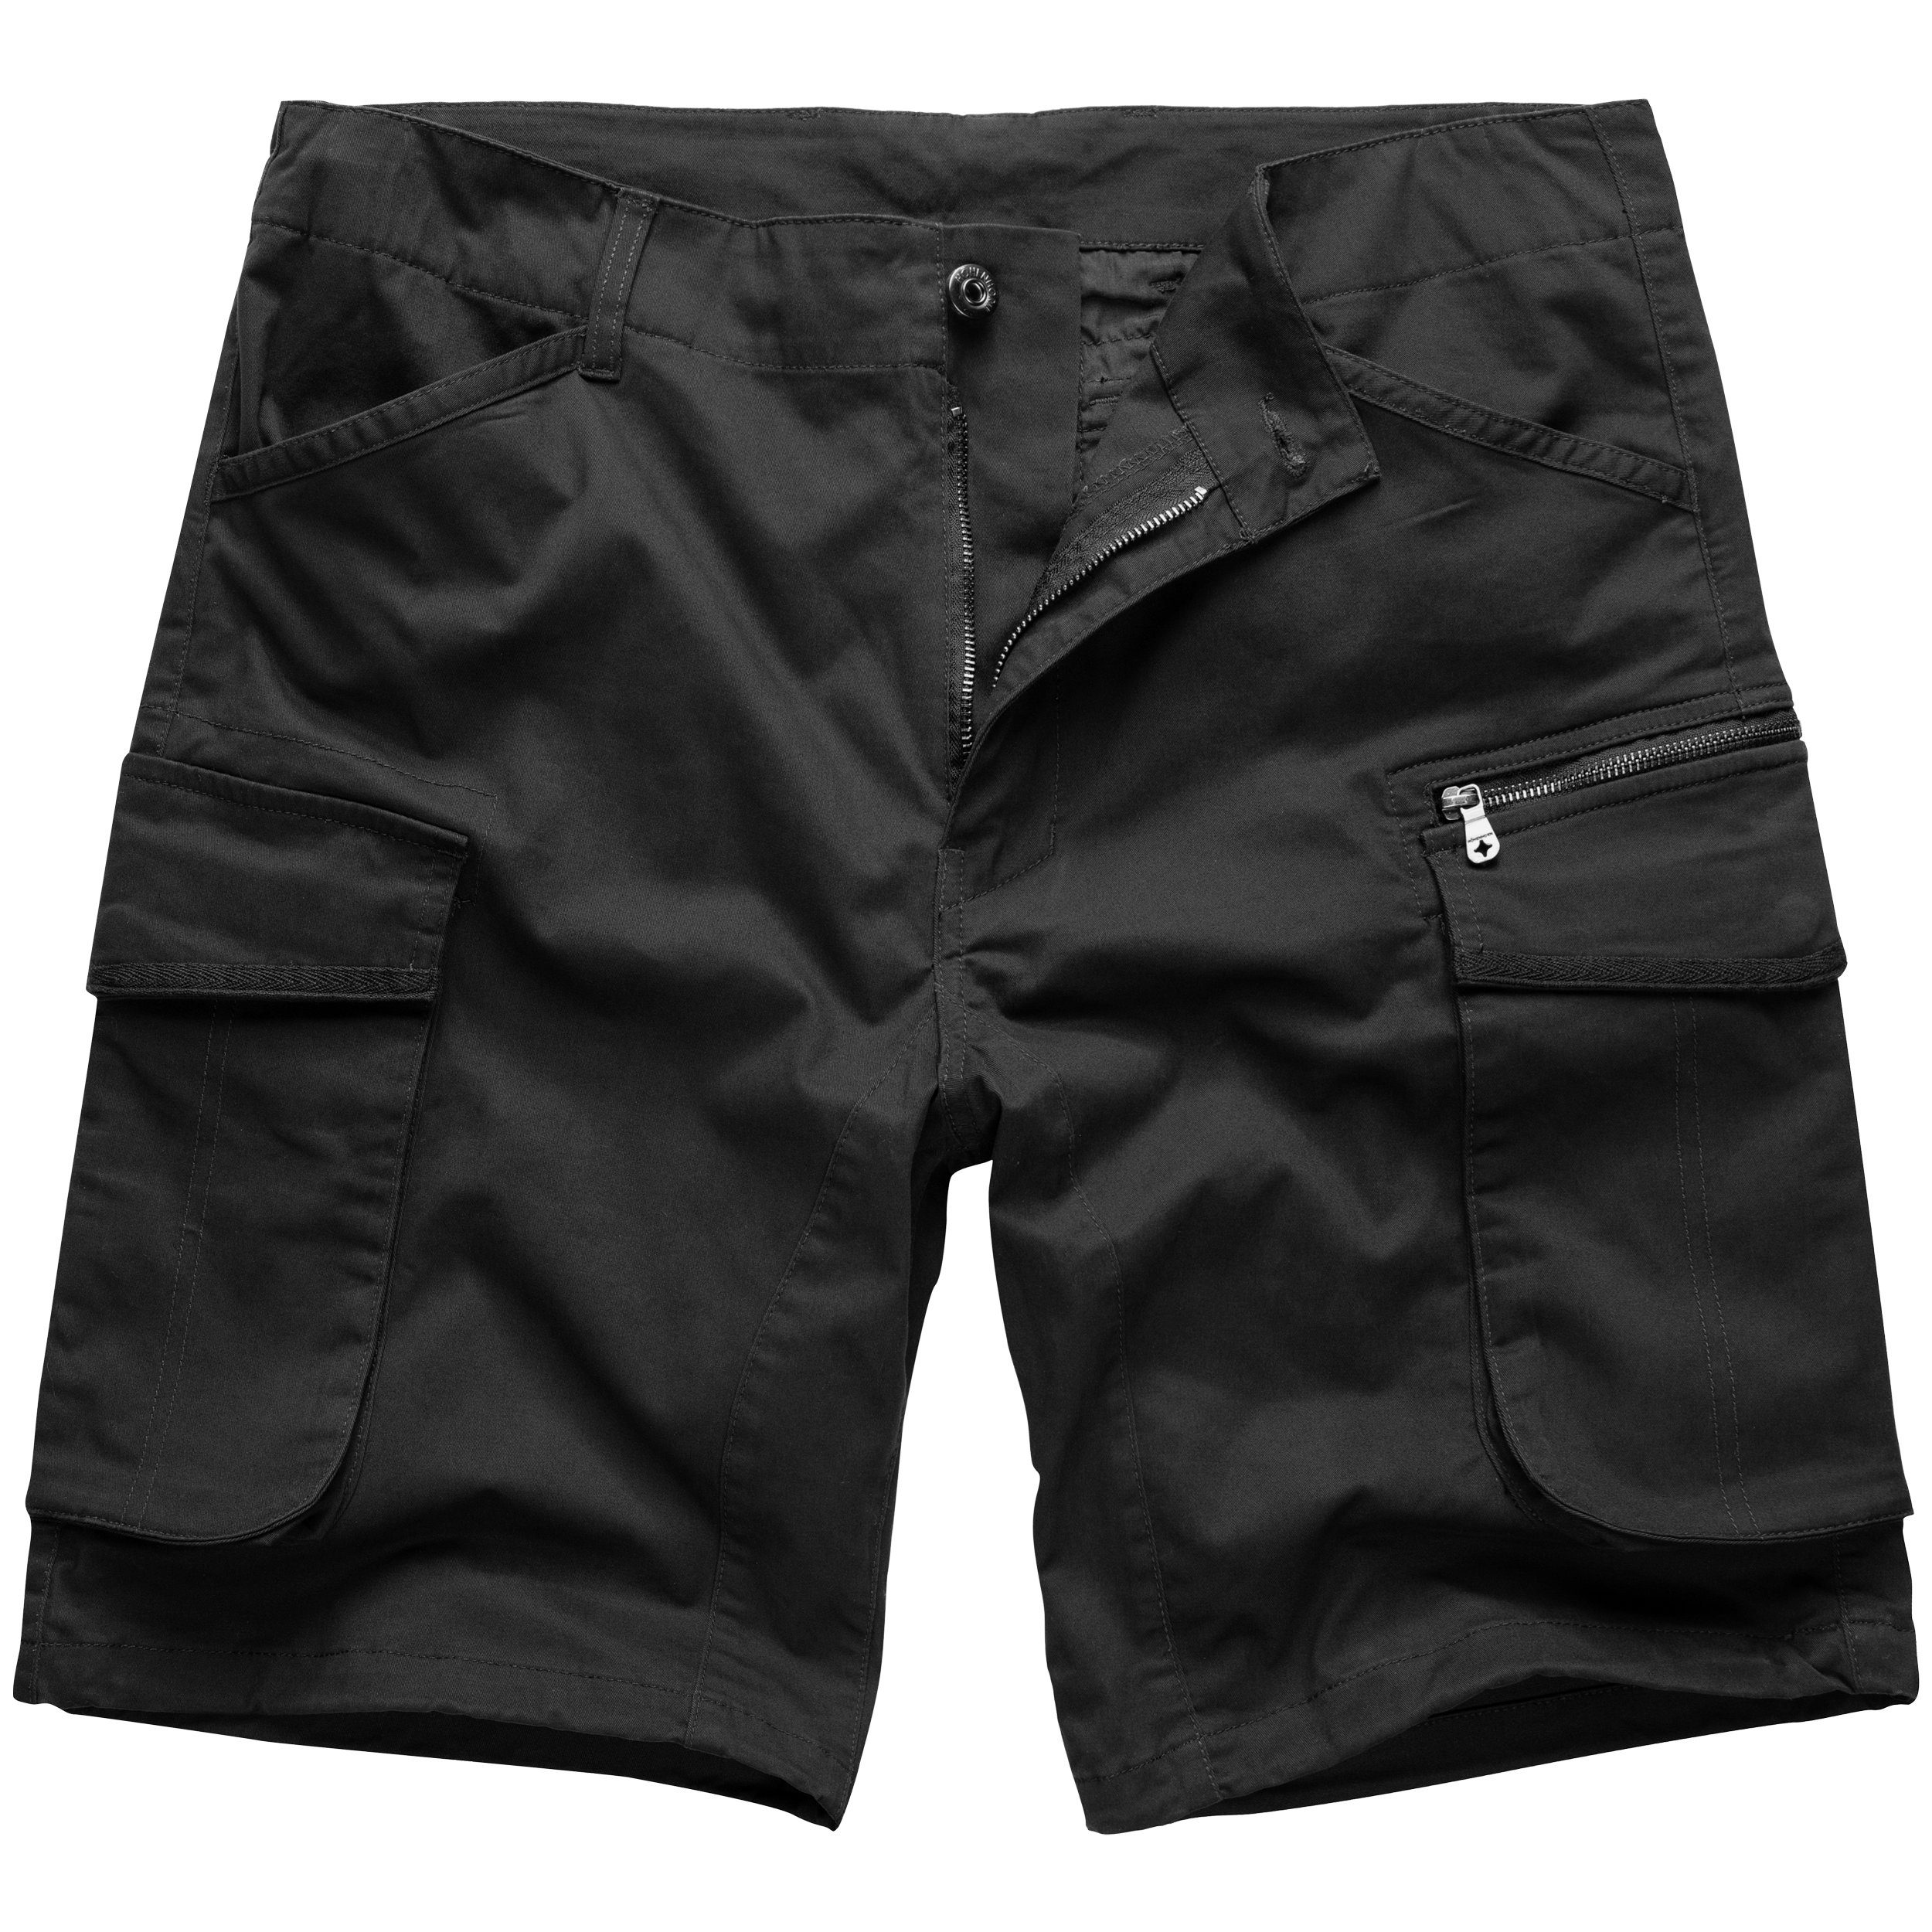 Höhenhorn Shorts Teramaster Herren Cargo Shorts Kurze Hose Bermuda Schwarz | Shorts